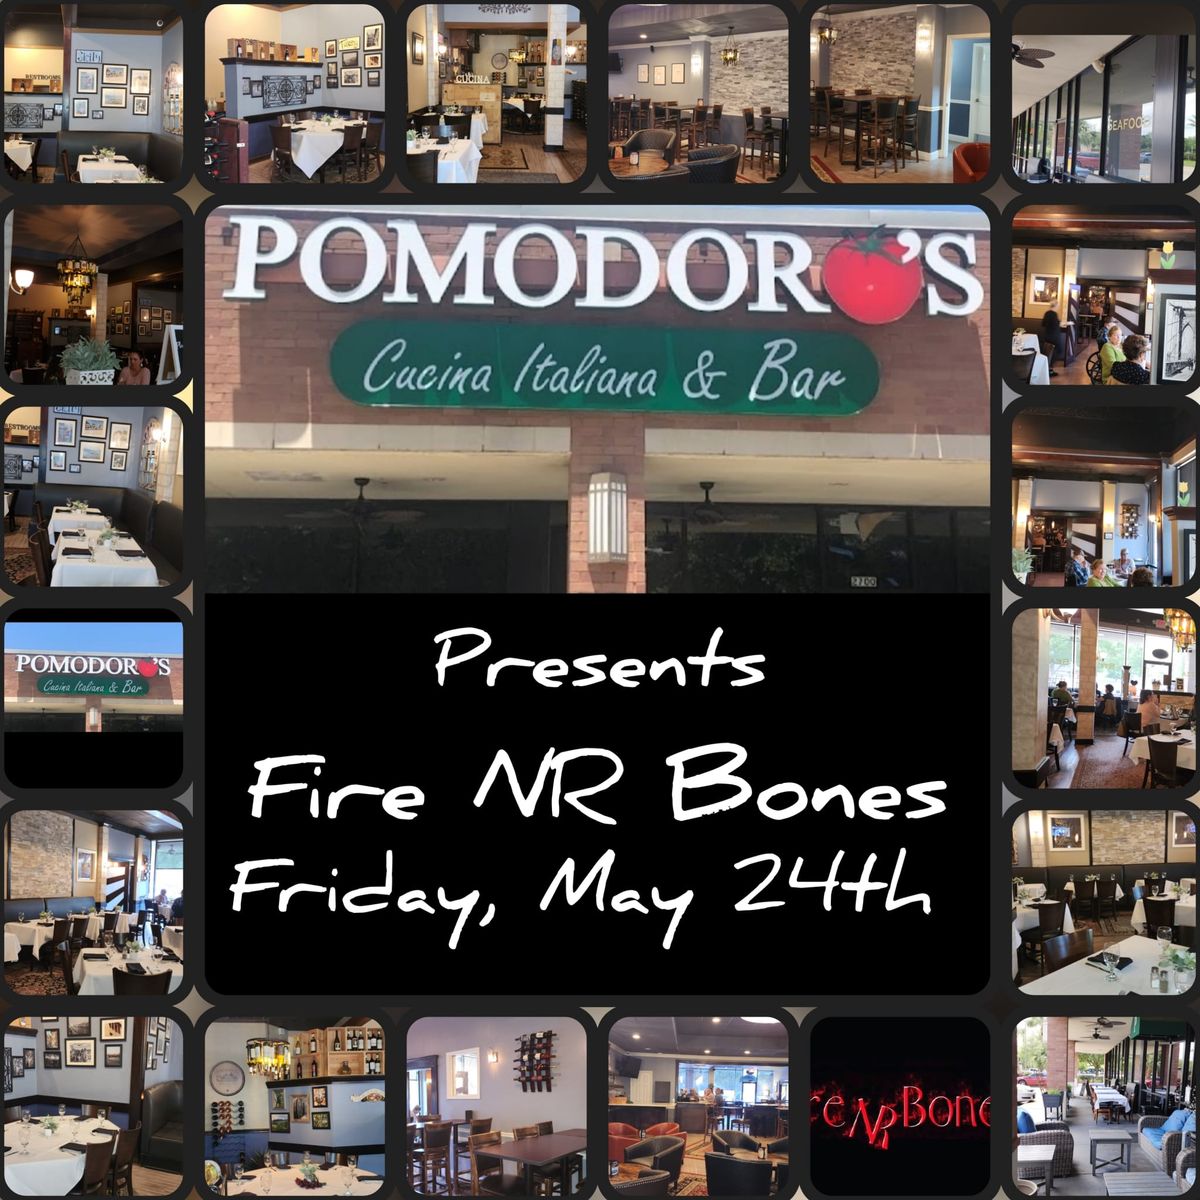 Fire NR Bones, Jazz and Blues at Pomodoro's Cucina Italiana in League City 